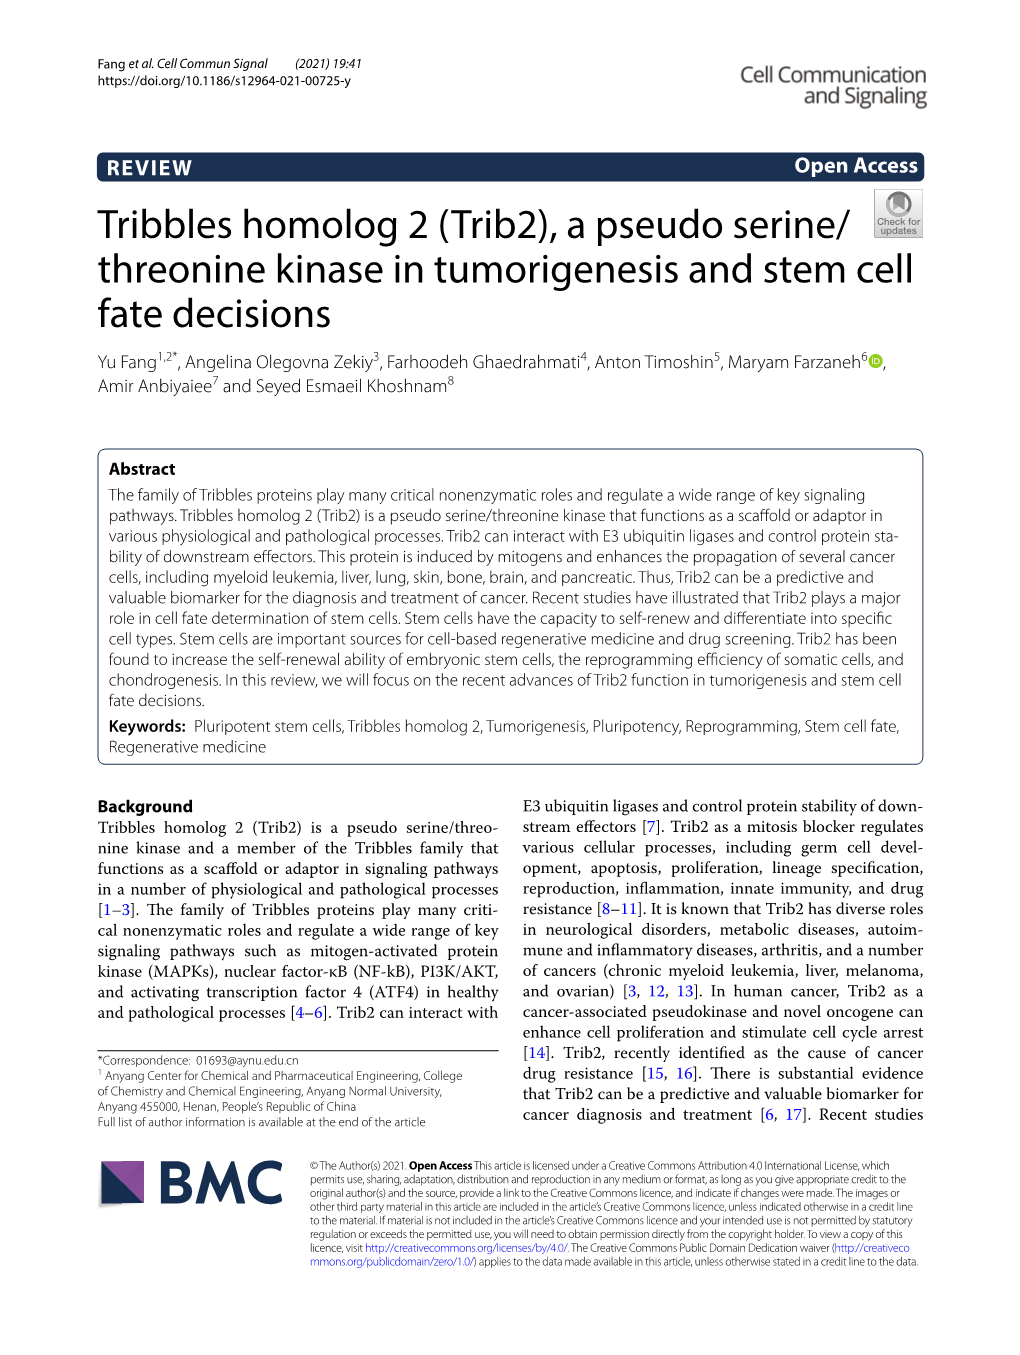 Tribbles Homolog 2 (Trib2), a Pseudo Serine/Threonine Kinase In